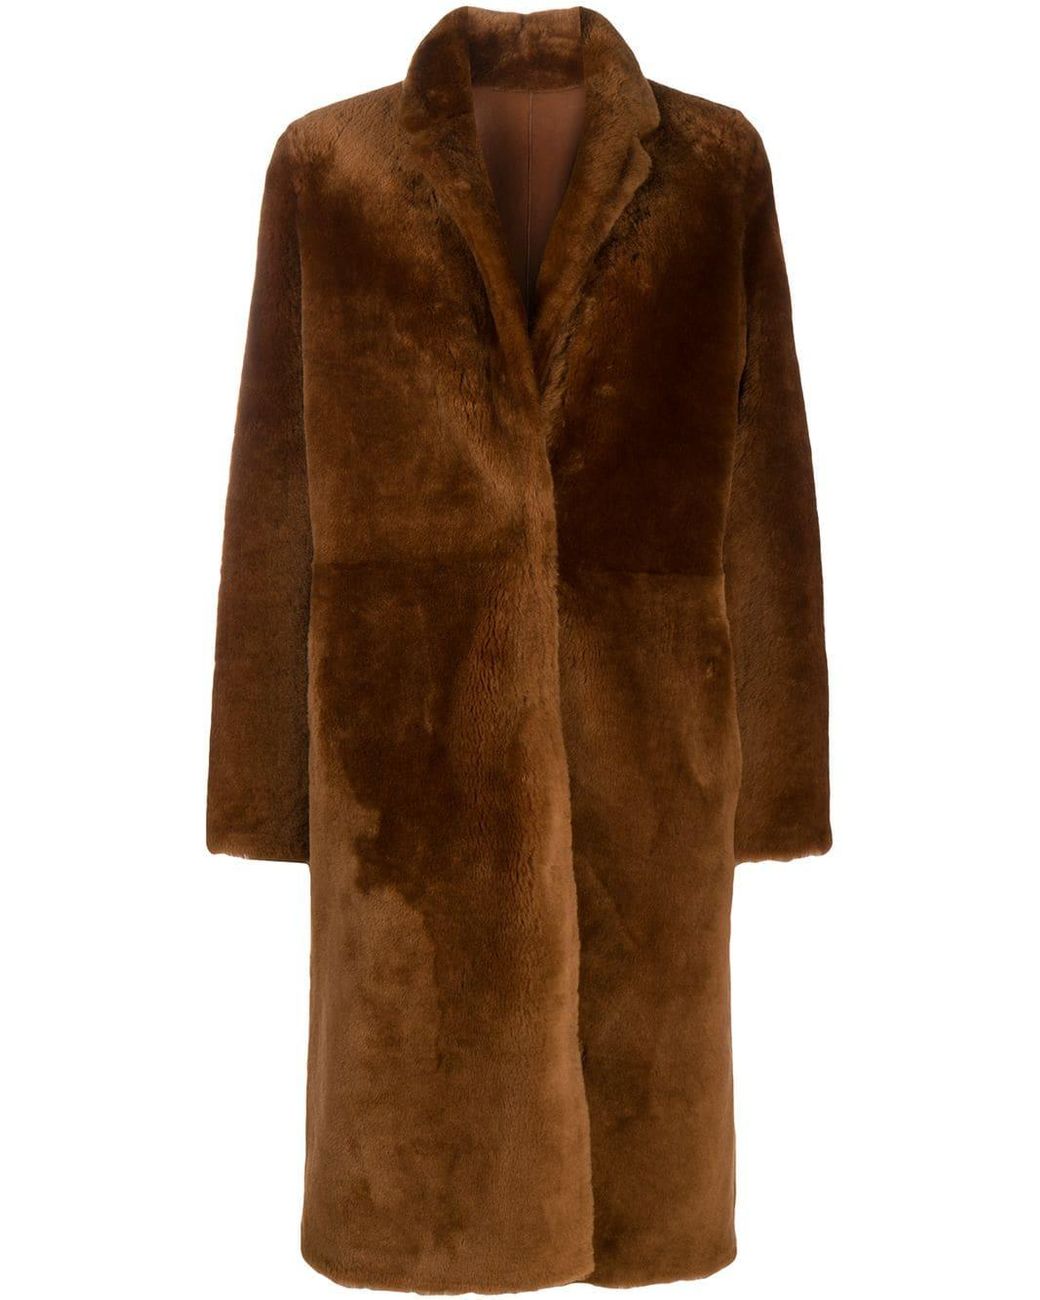 Yves Salomon Lamb Fur Coat in Brown - Lyst